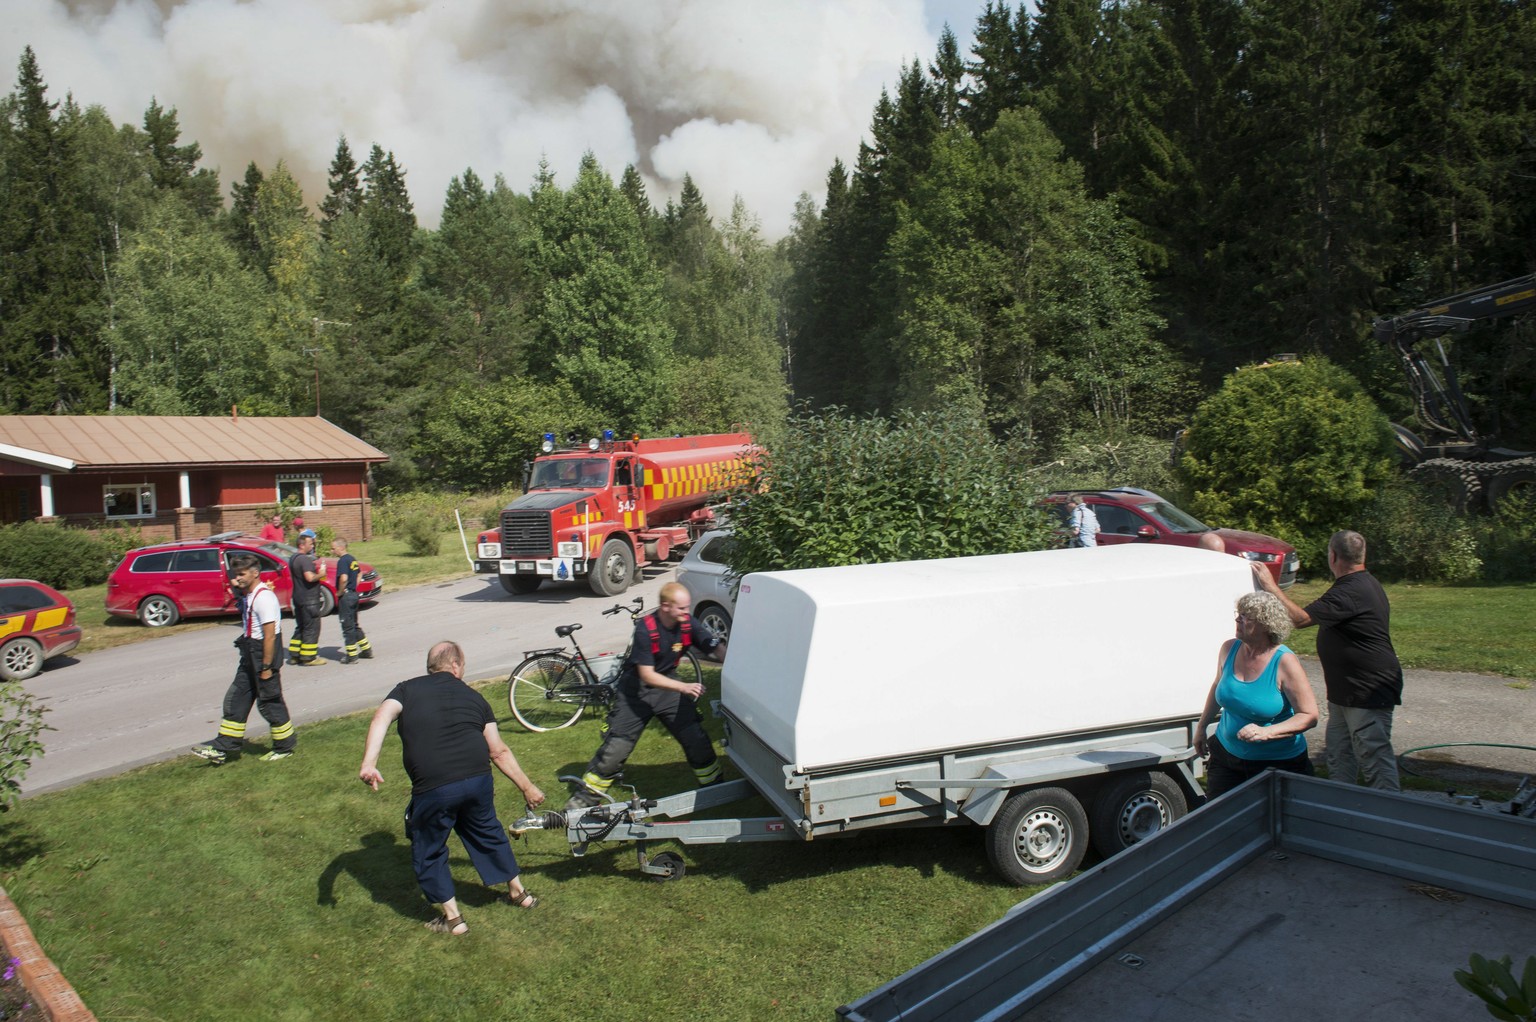 Einwohner eines vom Feuer bedrohten Dorfes und Einsatzkräfte der schwedischen Feuerwehr bereiten die Evakuation vor.